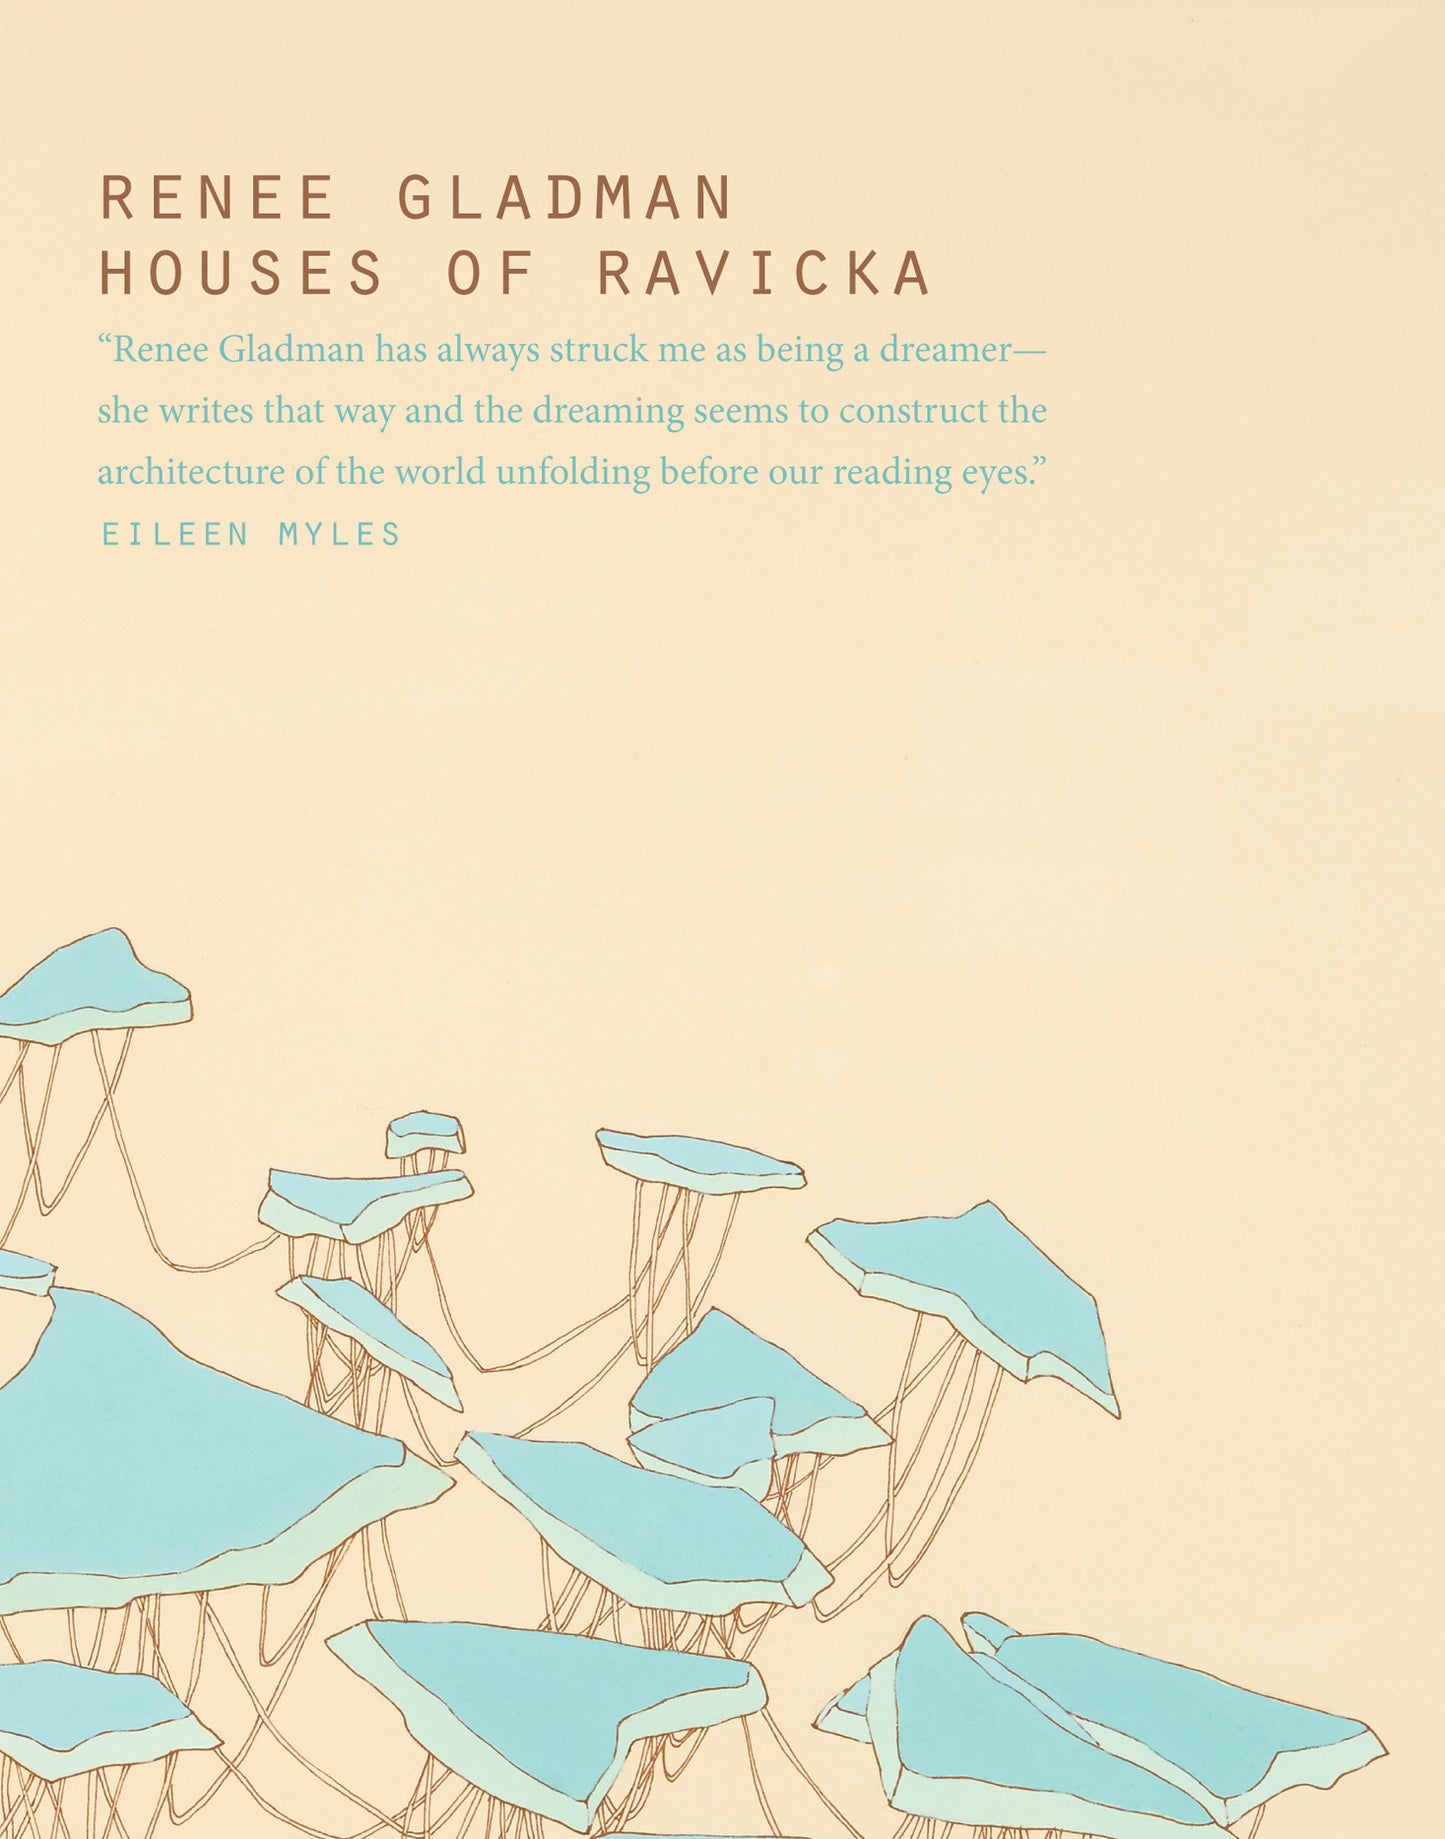 Houses of Ravicka